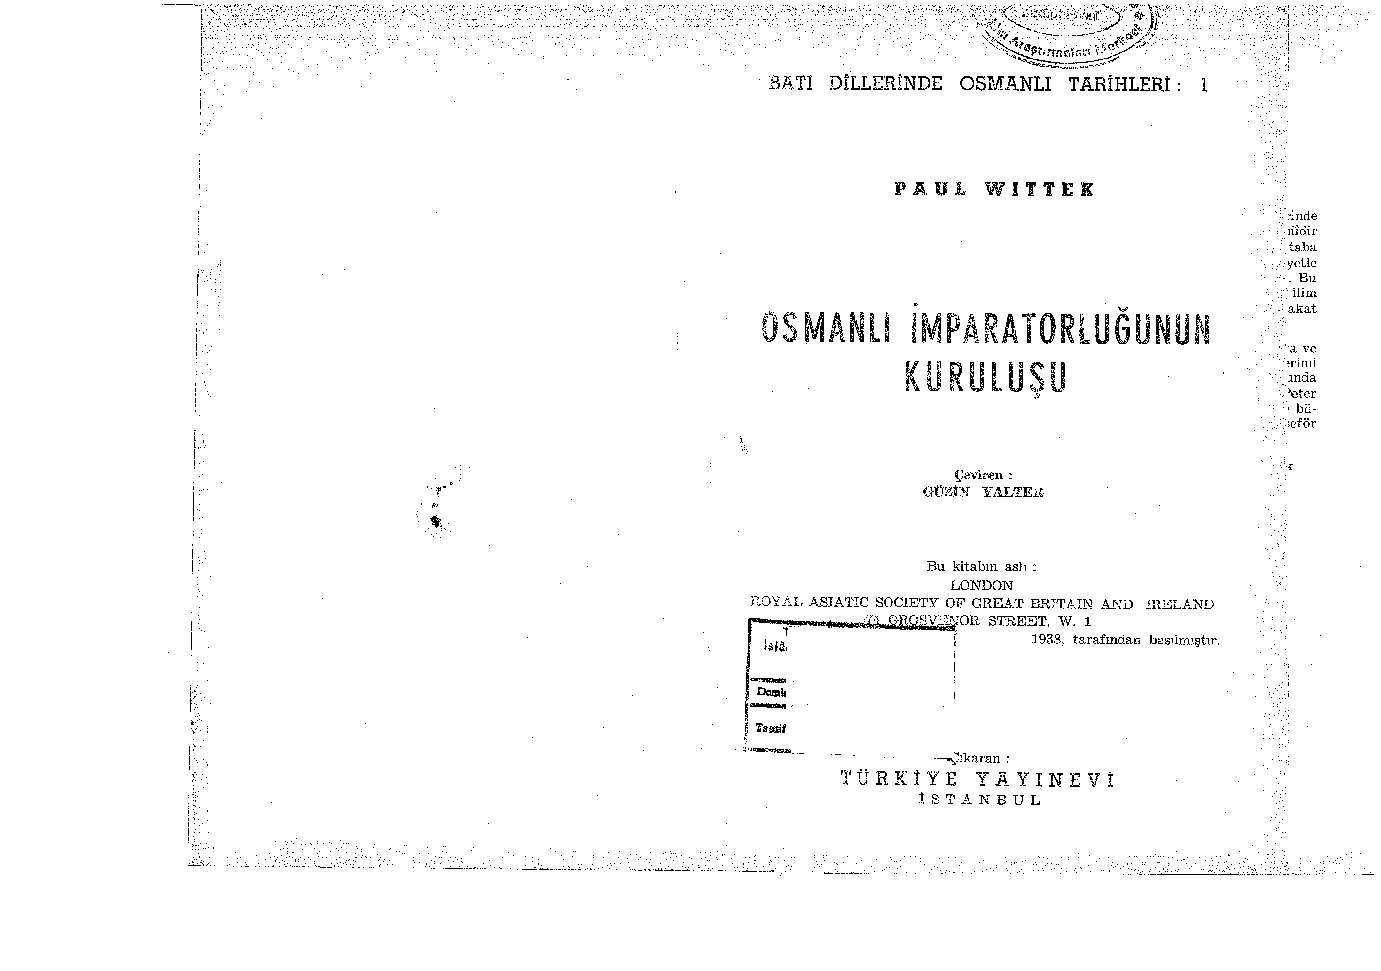 Osmanlı Impiraturluğunun Quruluşu-Paul Wittek-Güzin Yalter-1925-330s